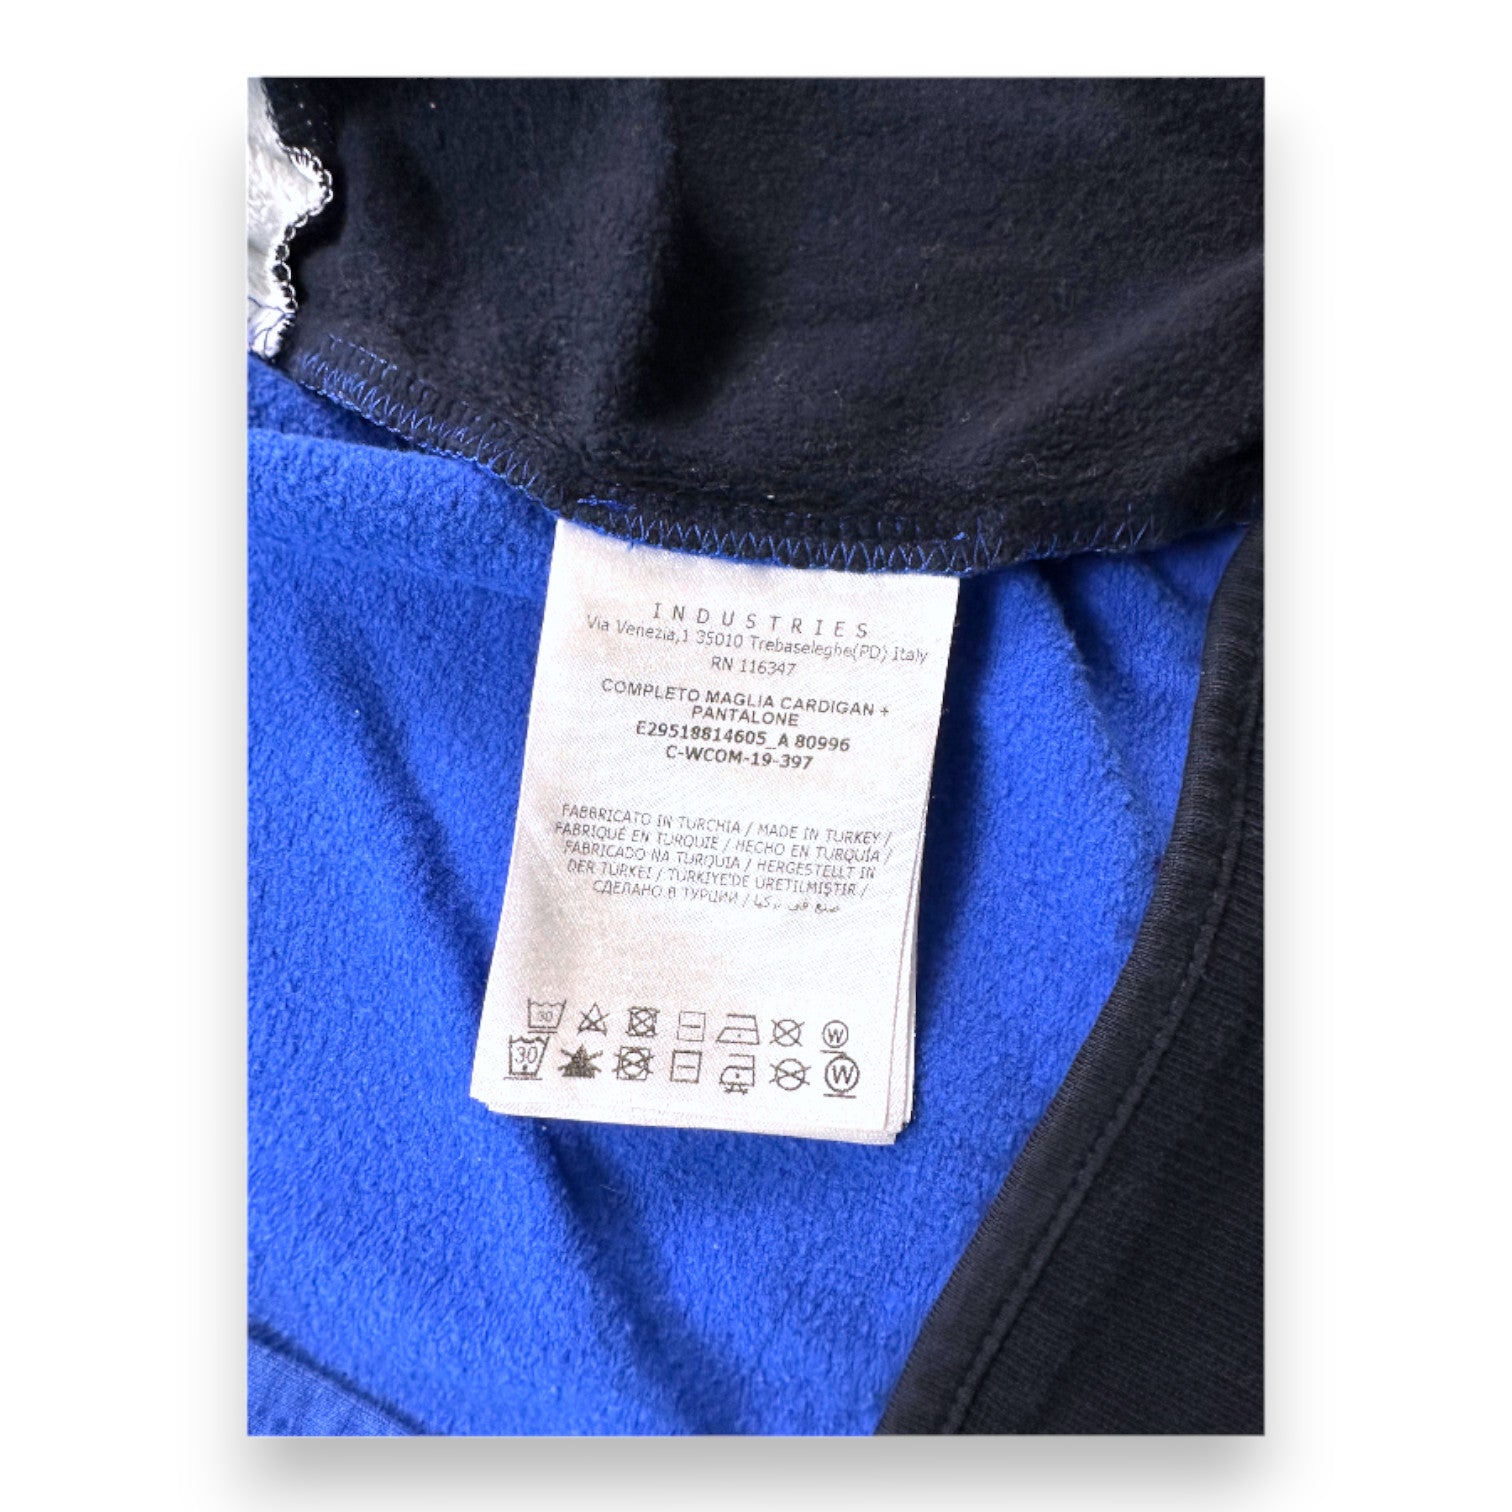 MONCLER - Sweat zippé bleu blanc et noir "Moncler" - 18 mois